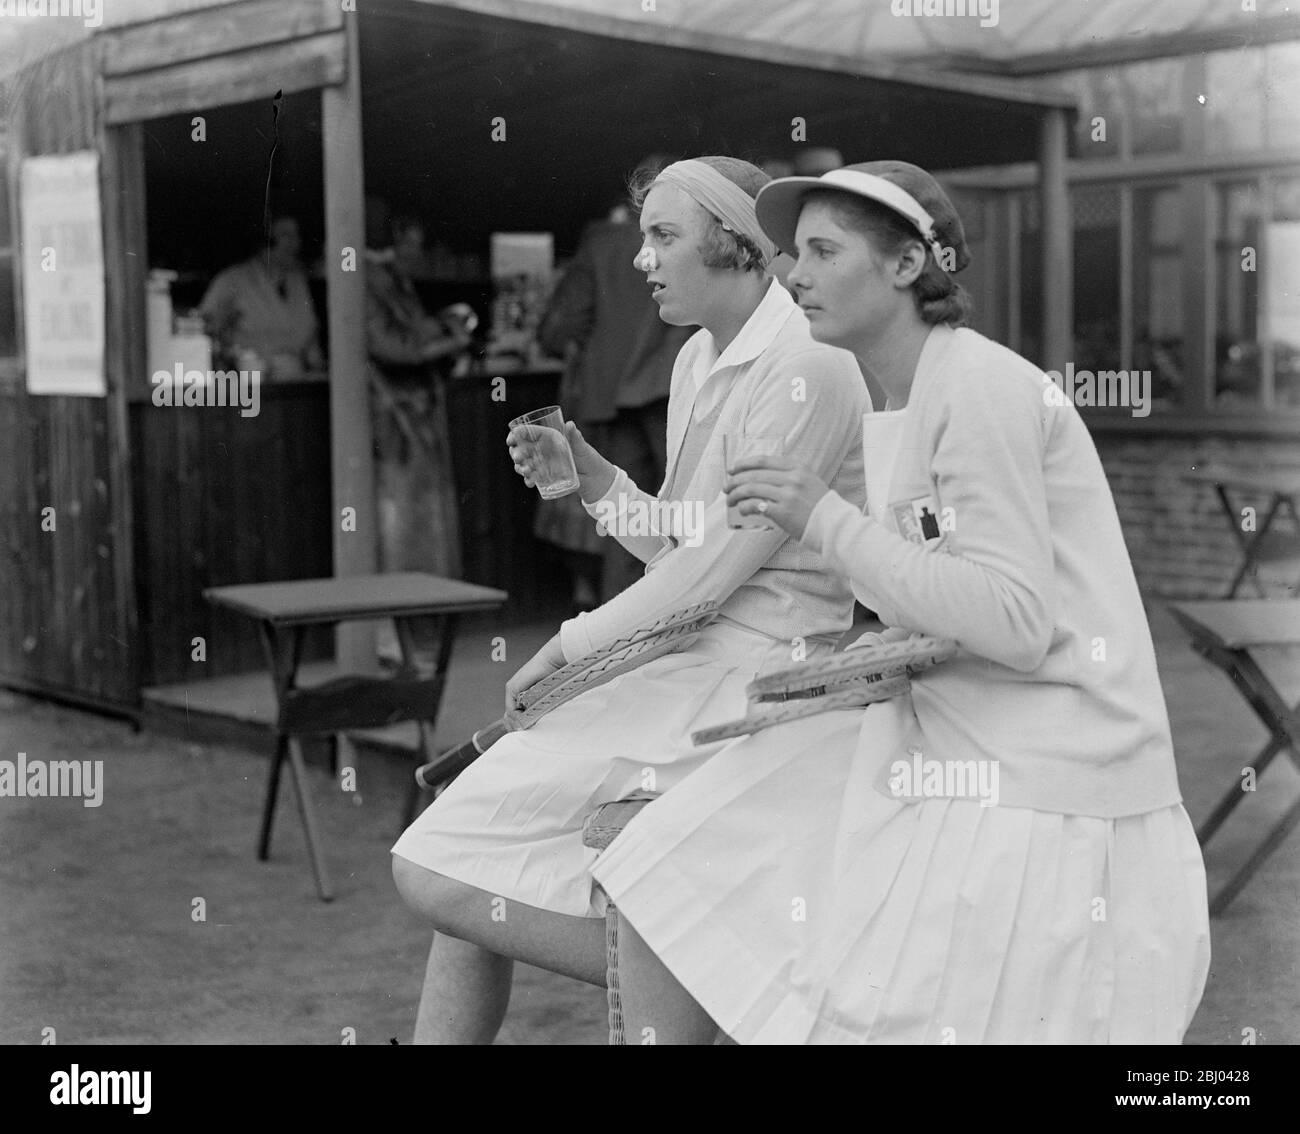 Mlle Stammers remporte la finale des célibataires à Ealing. - Mlle Stammers (près de la caméra) et Mlle Scott prenant des rafraîchissements après le match. - 23 avril 1932 Banque D'Images